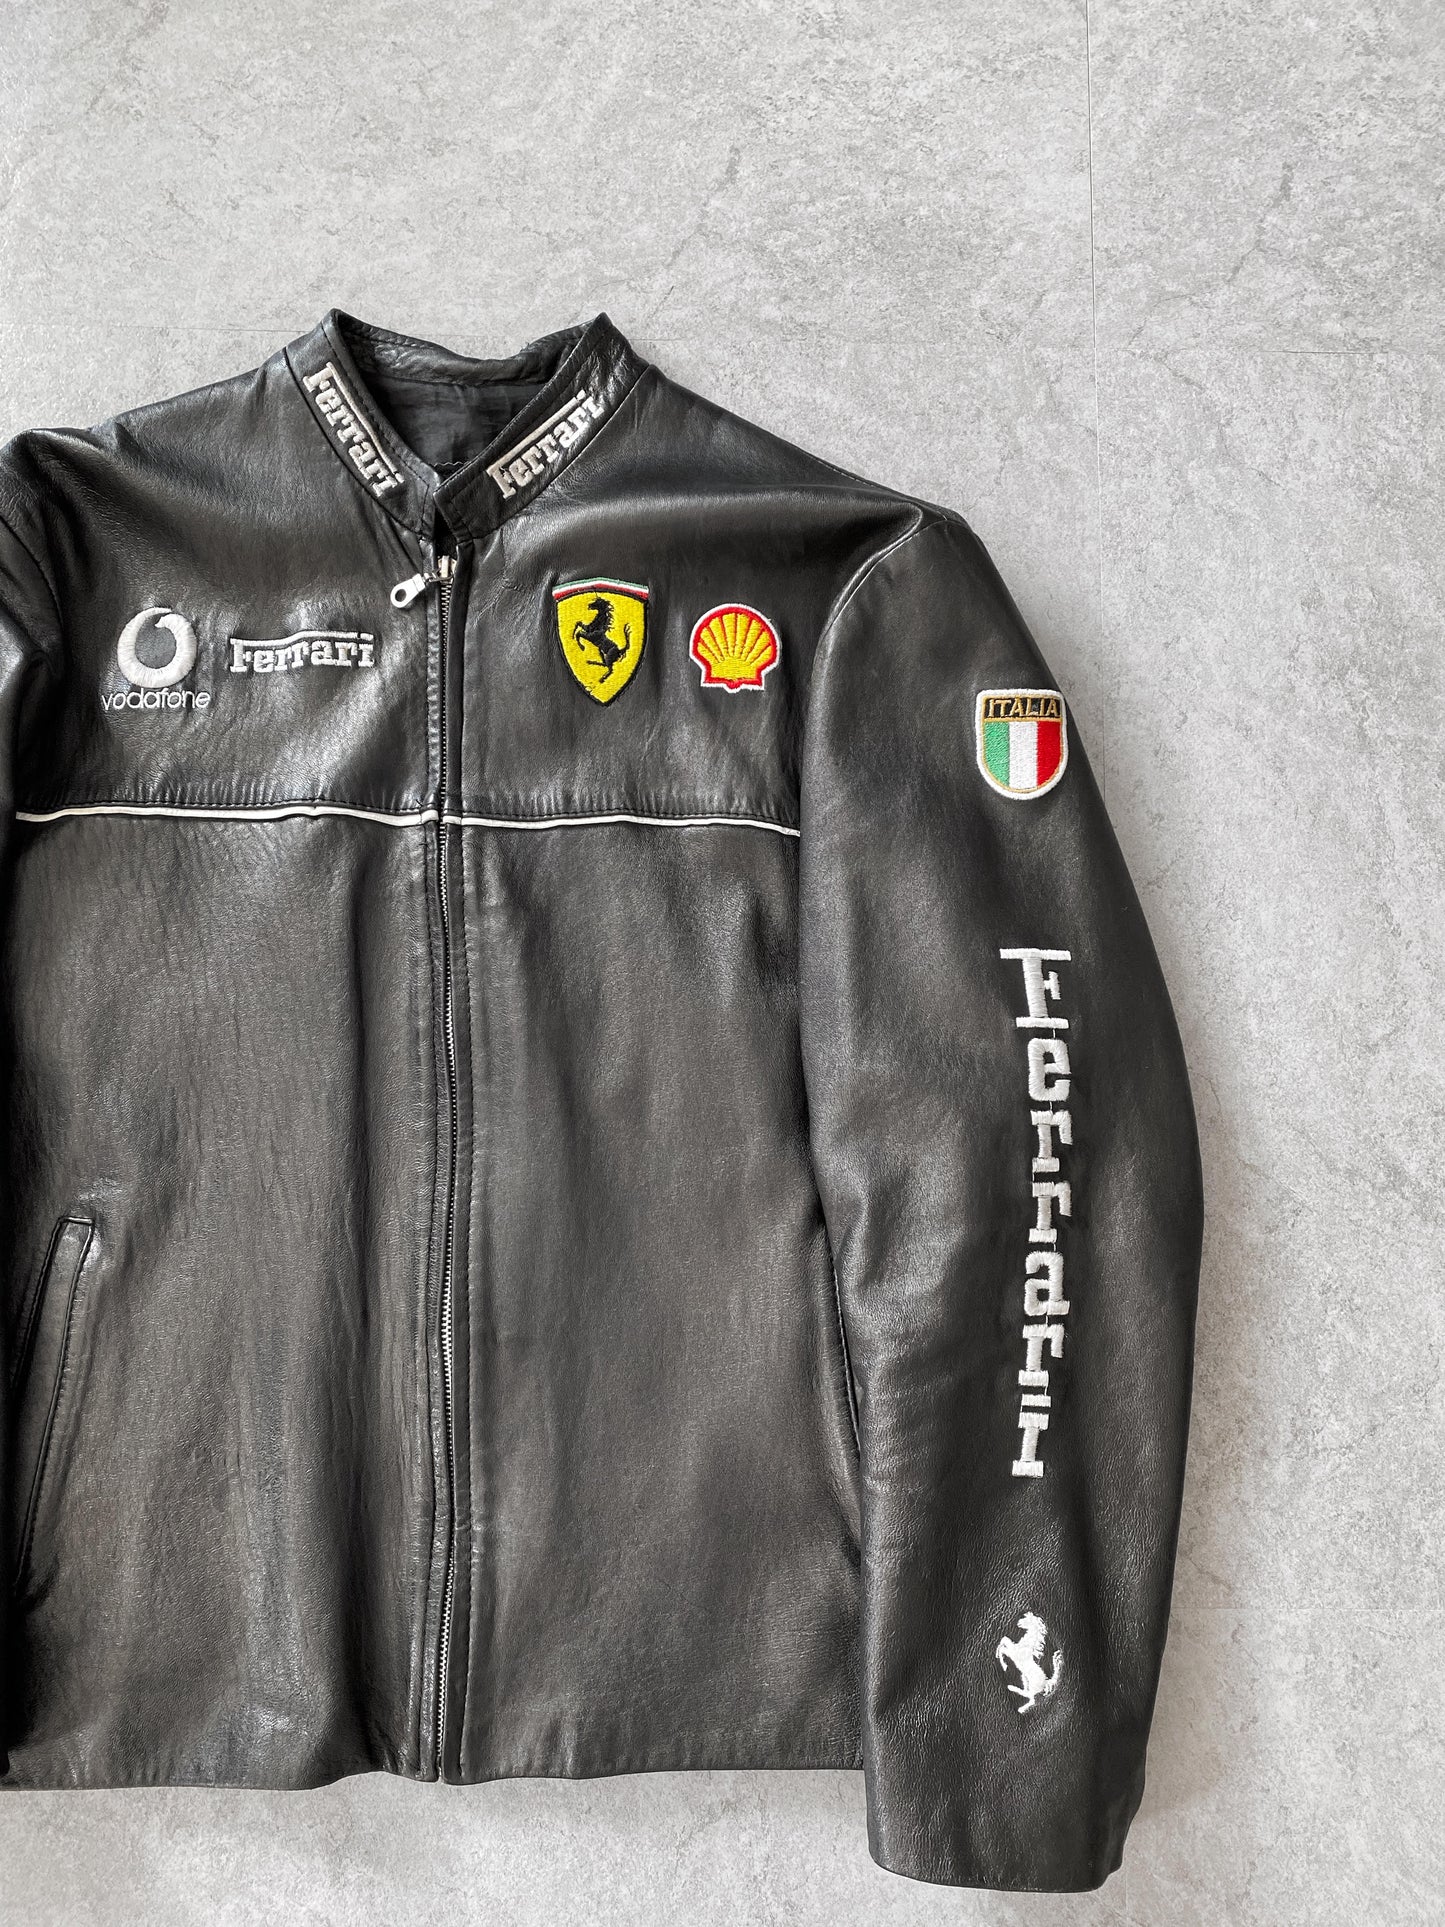 Vintage Ferrari Leather Racing Jacket